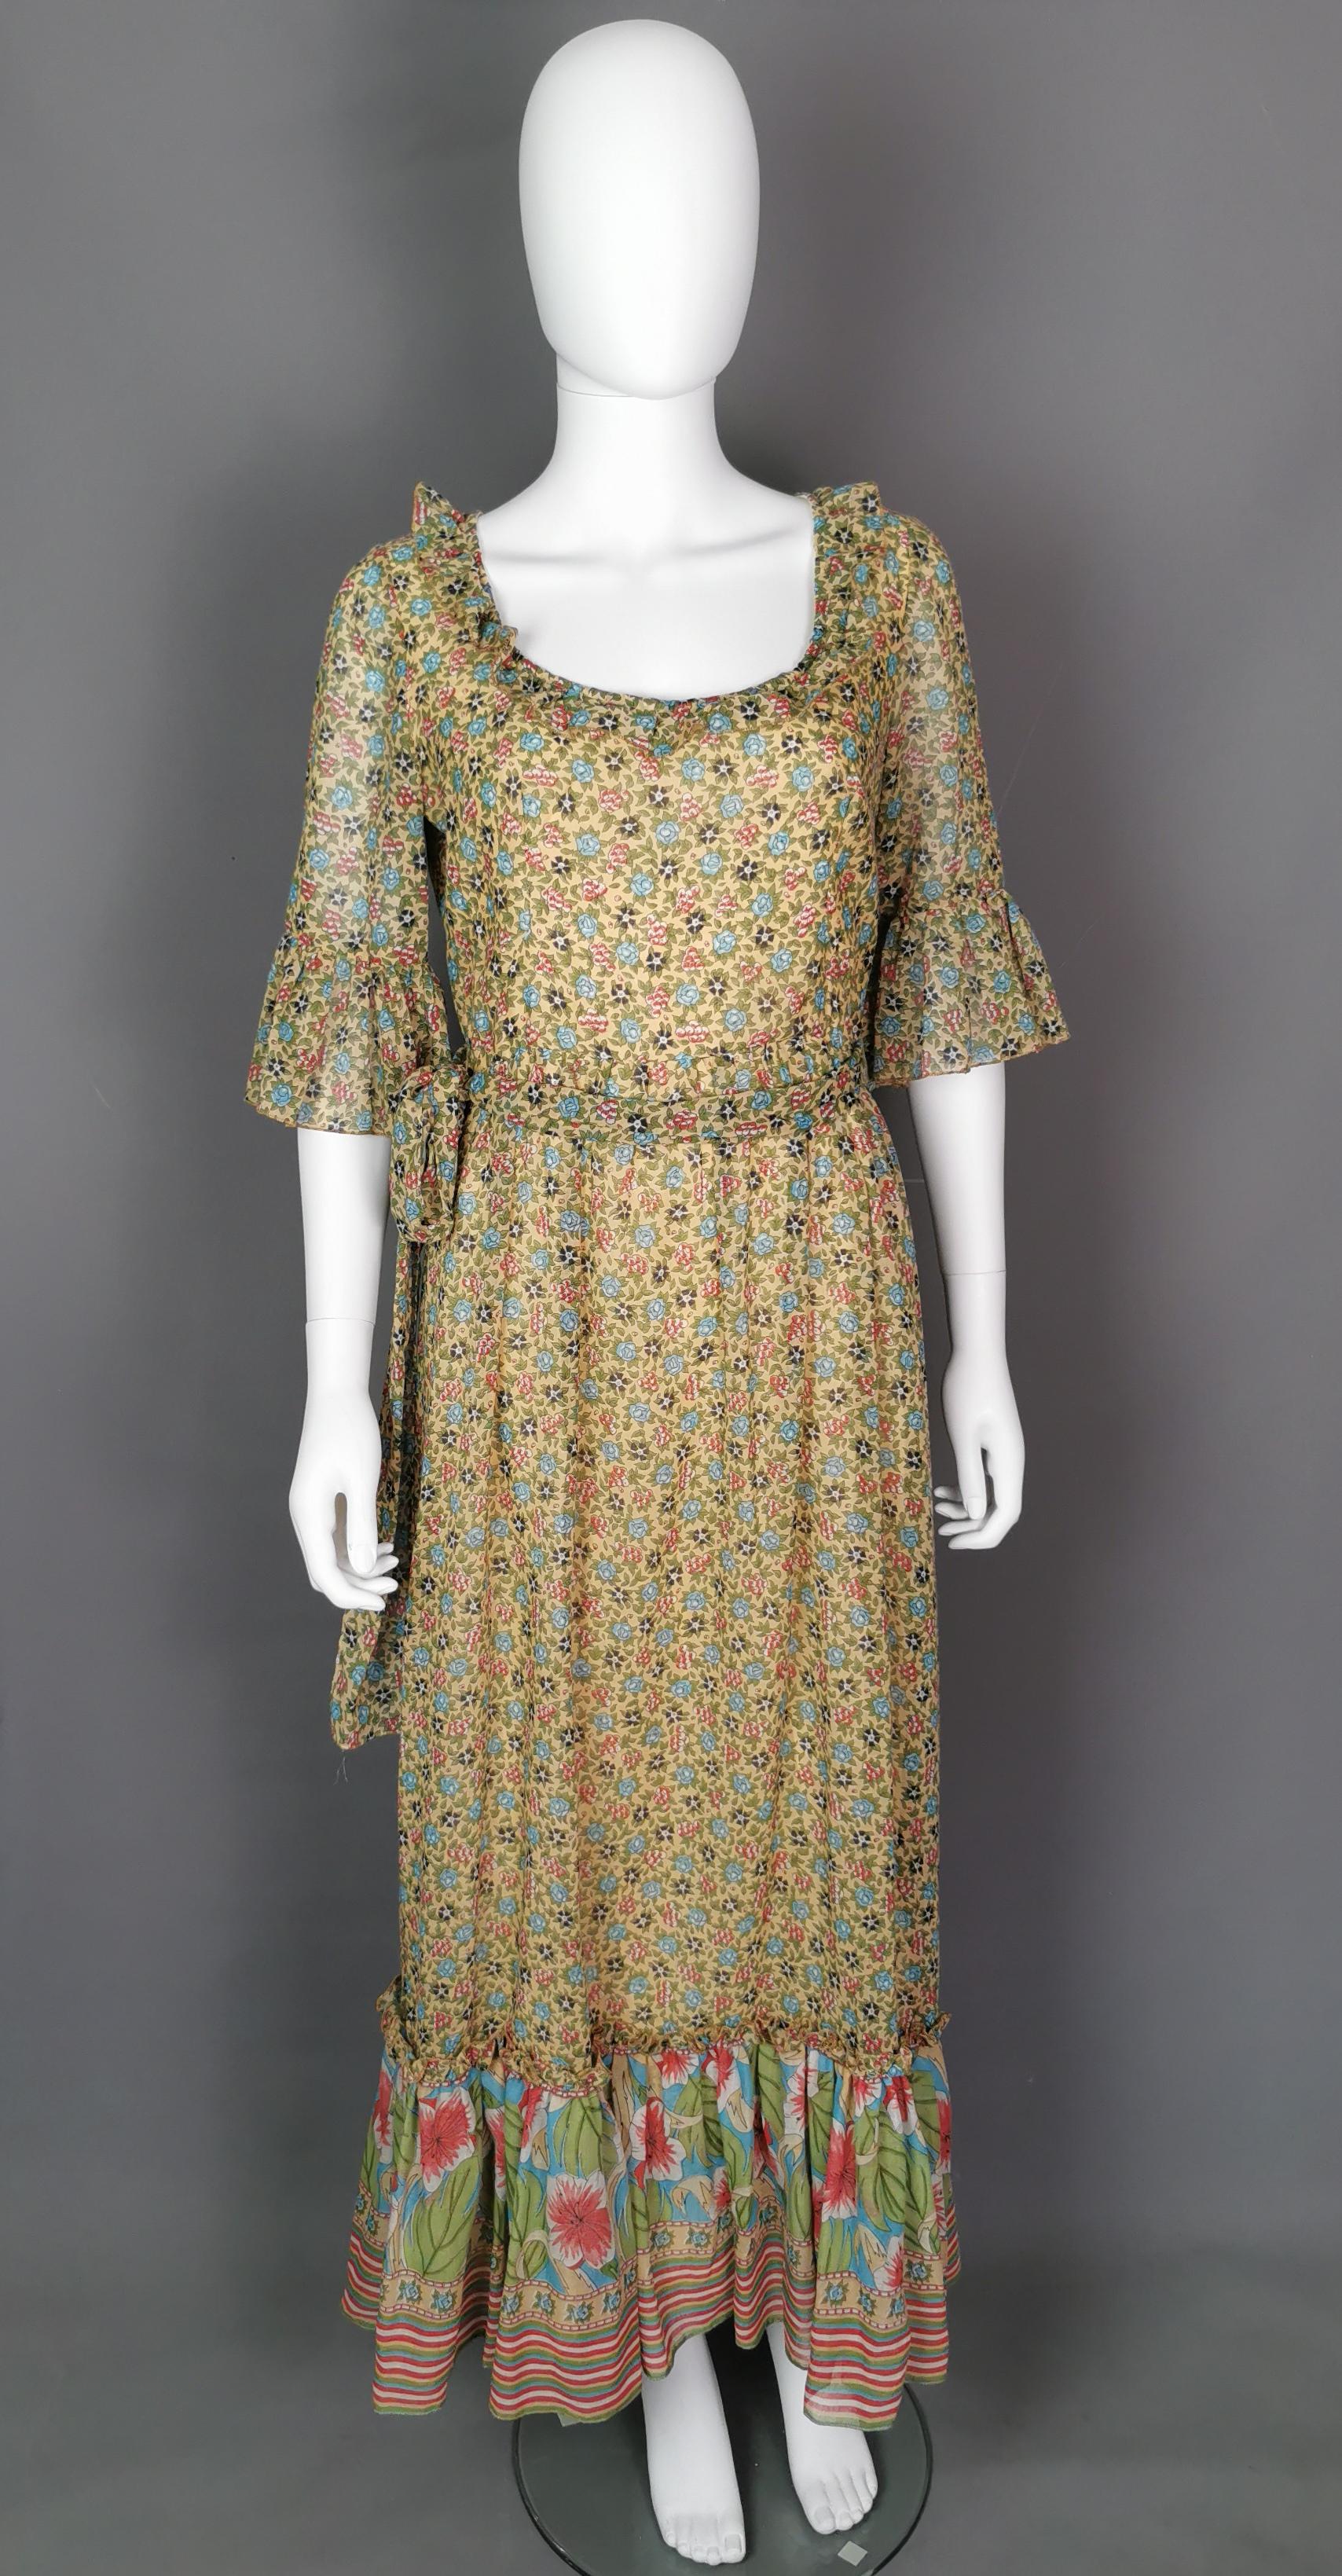 Eine schöne Vintage c1970s floral Maxi-Kleid.

Das Kleid ist aus weicher, leicht durchscheinender, feiner Baumwolle gefertigt, die mit einem floralen Muster bedruckt ist, fast wie ein Zickzackdruck mit einem kontrastierenden tropischen Blumendruck